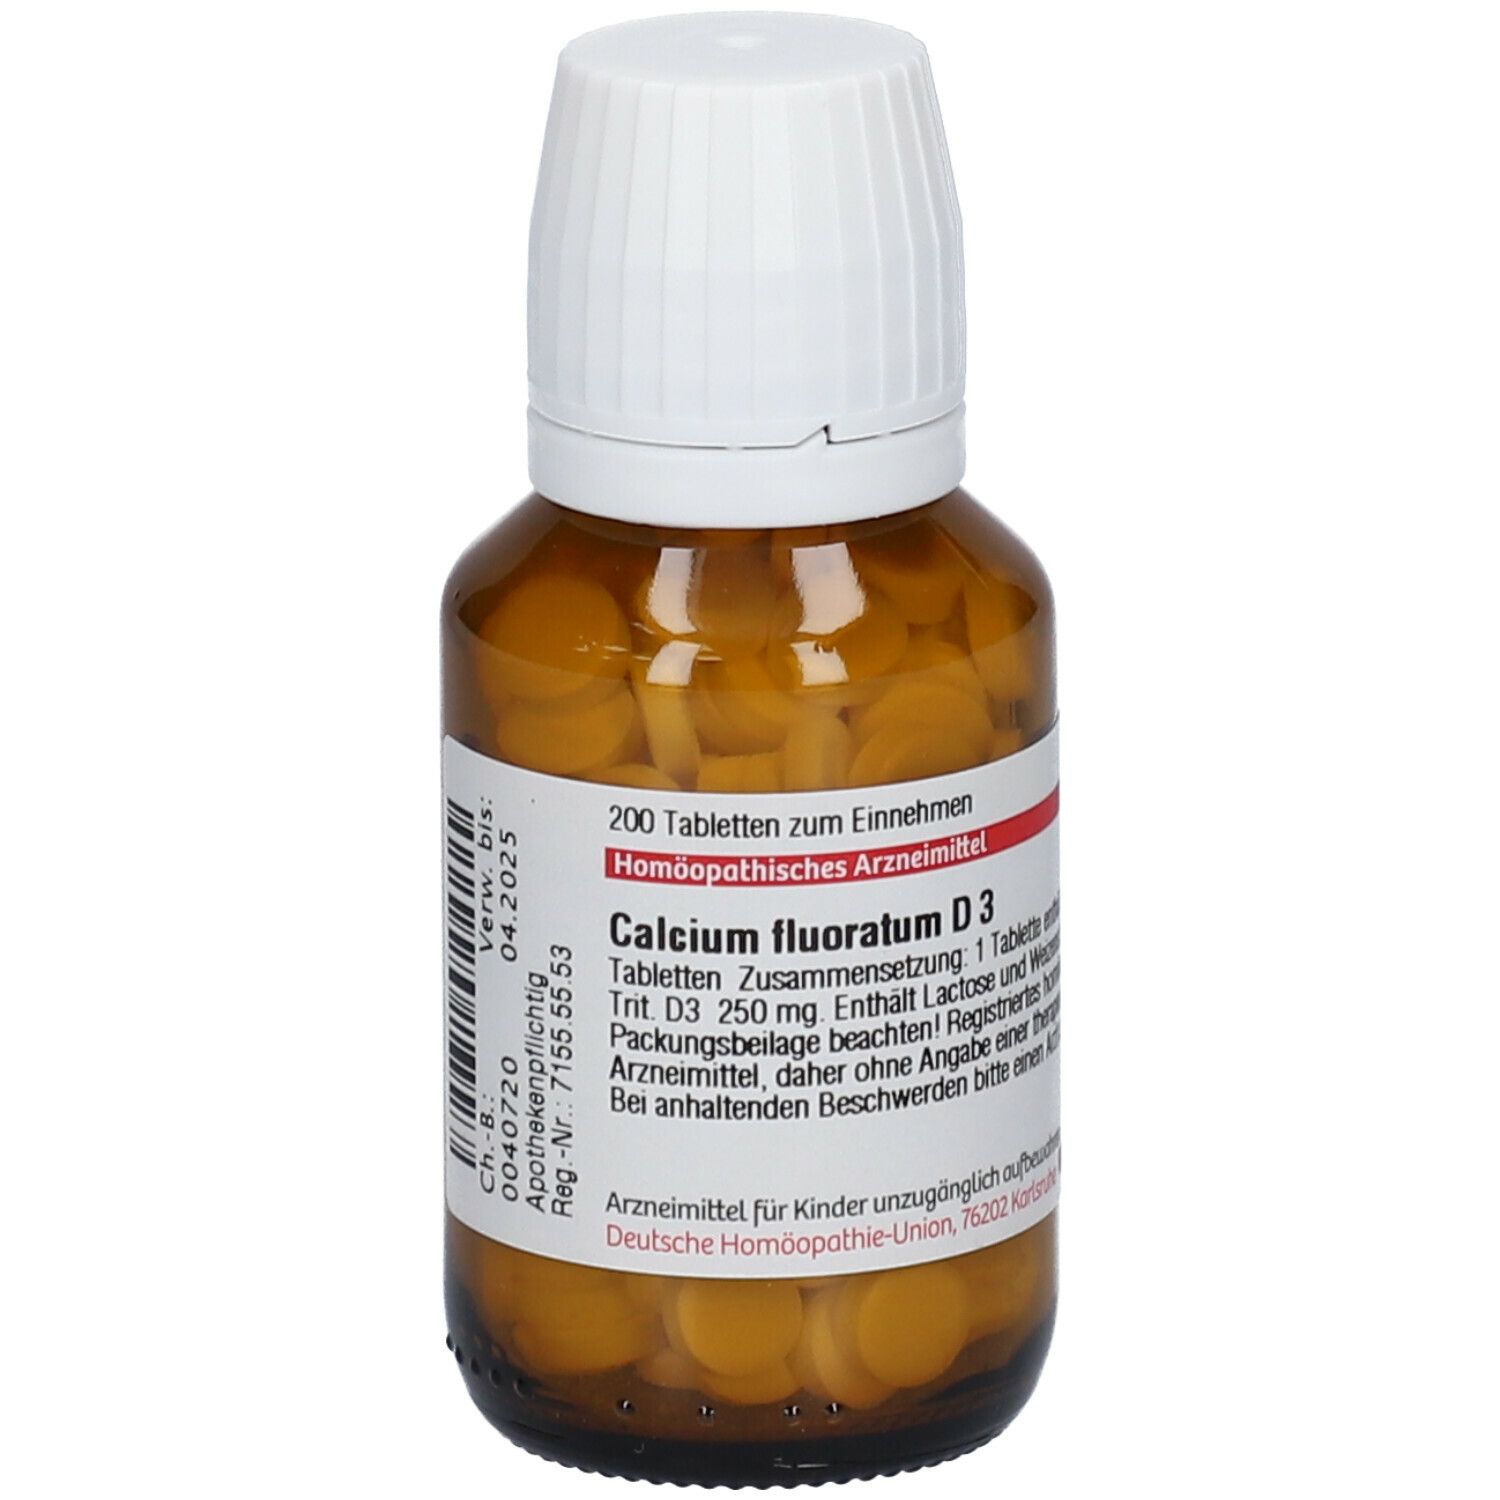 DHU Calcium Fluoratum D3